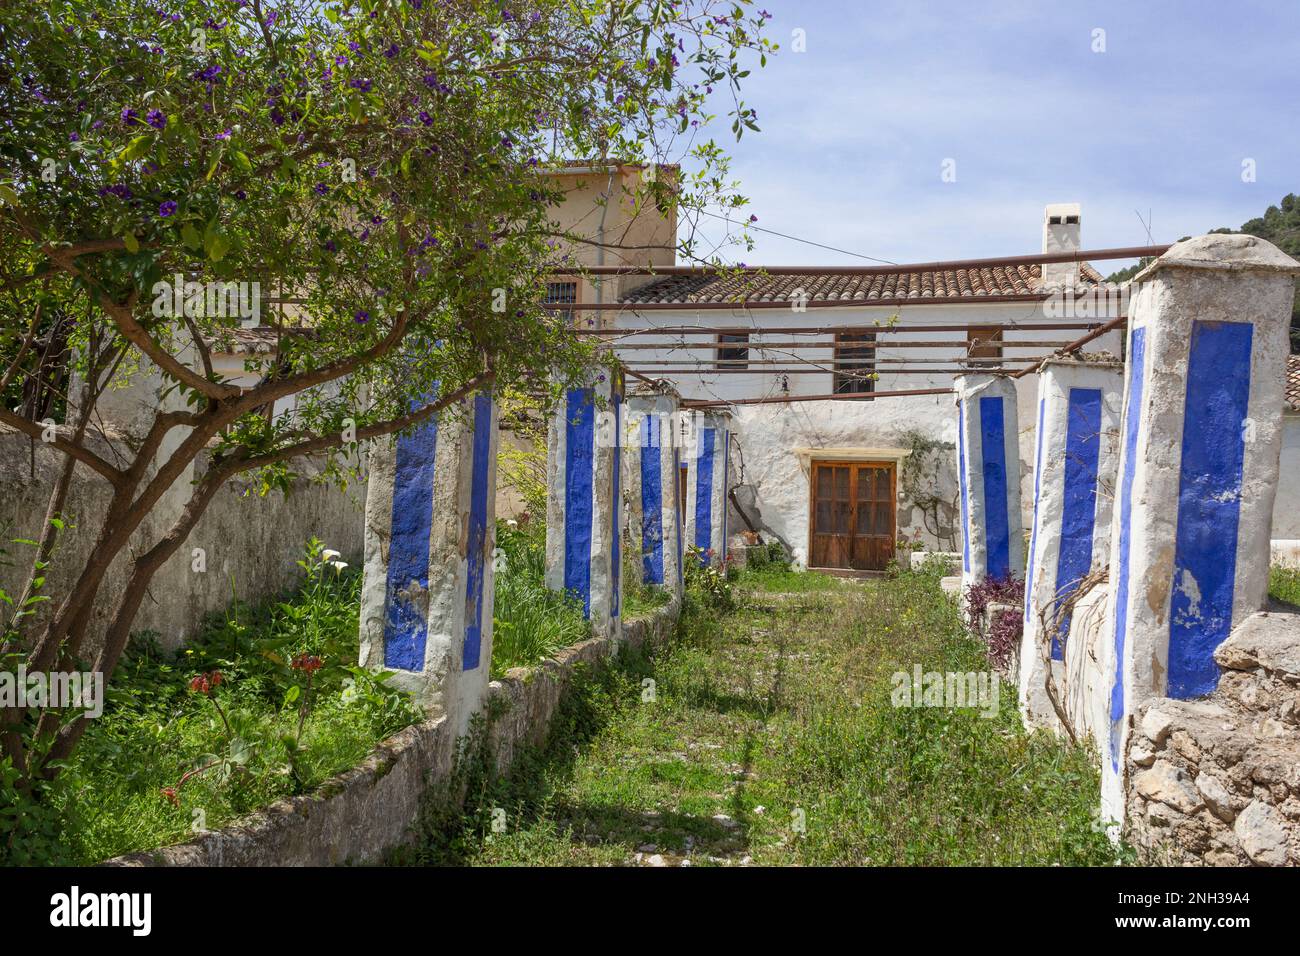 Ingresso alla proprietà abbandonata, Spagna meridionale. Foto Stock